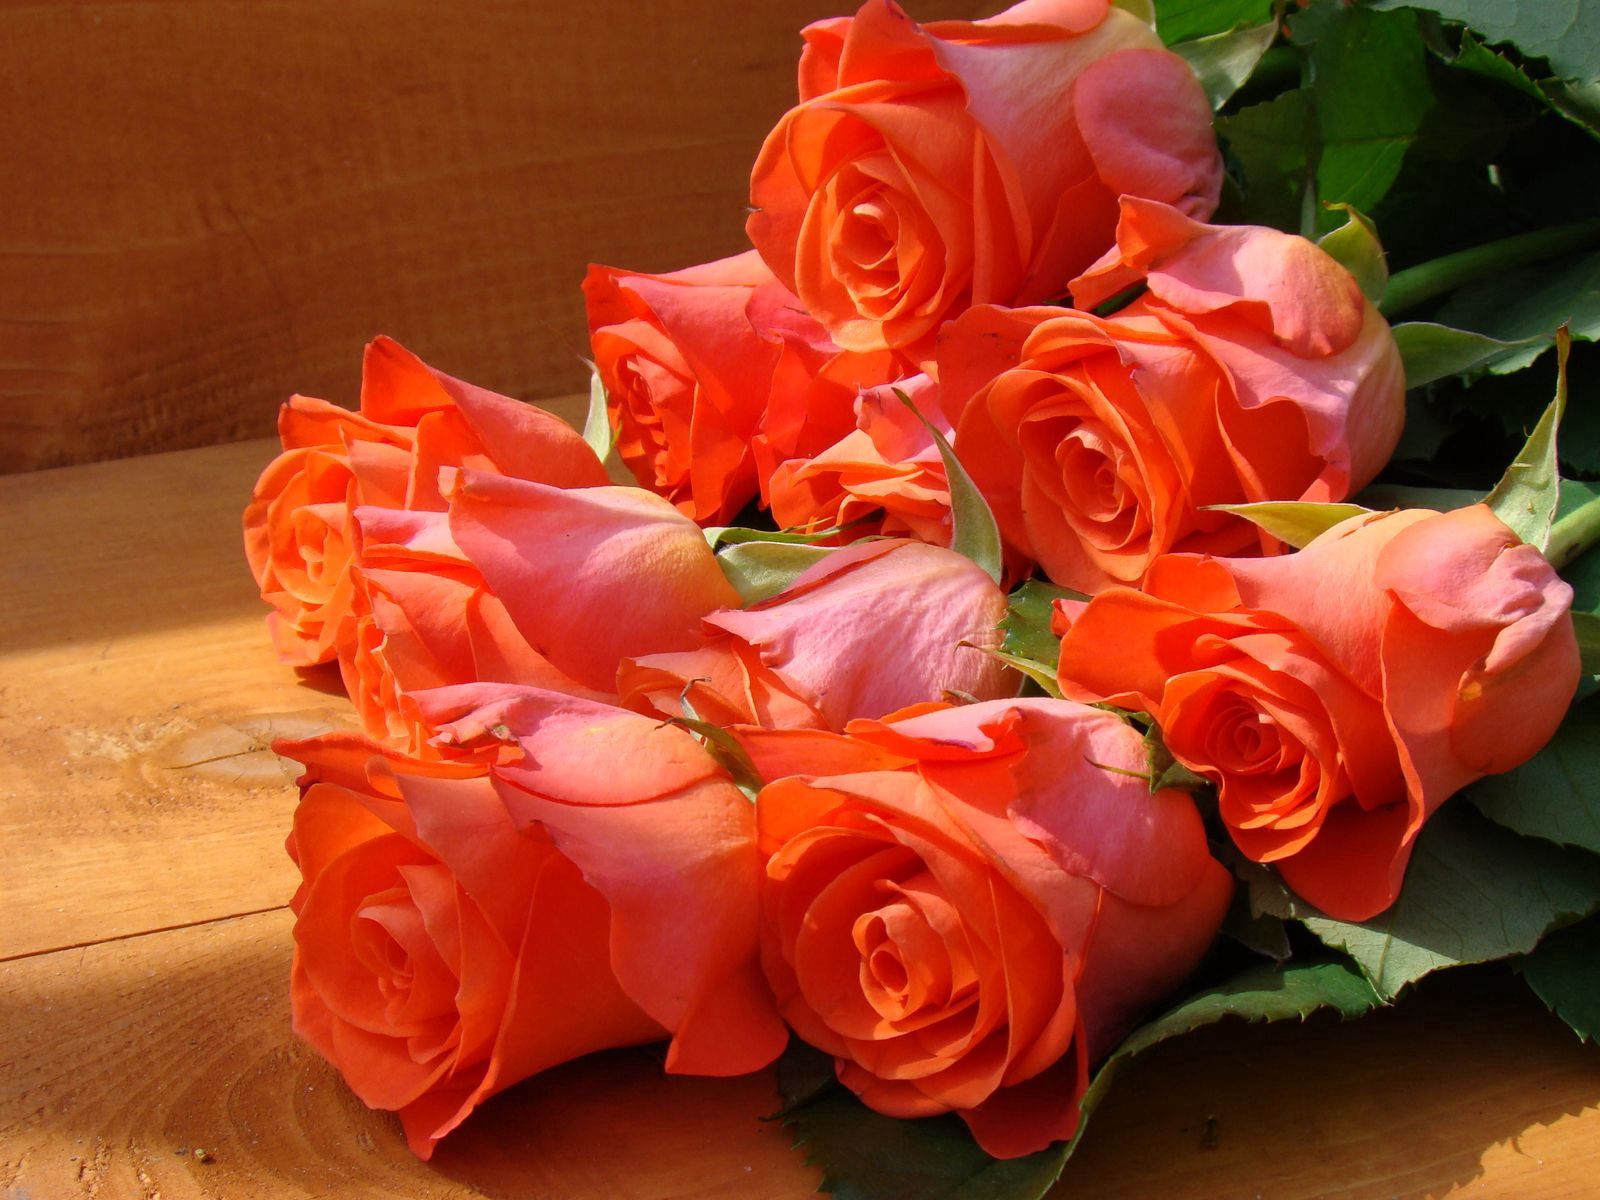 desktop Images roses, flowers, beauty, bouquet, bench